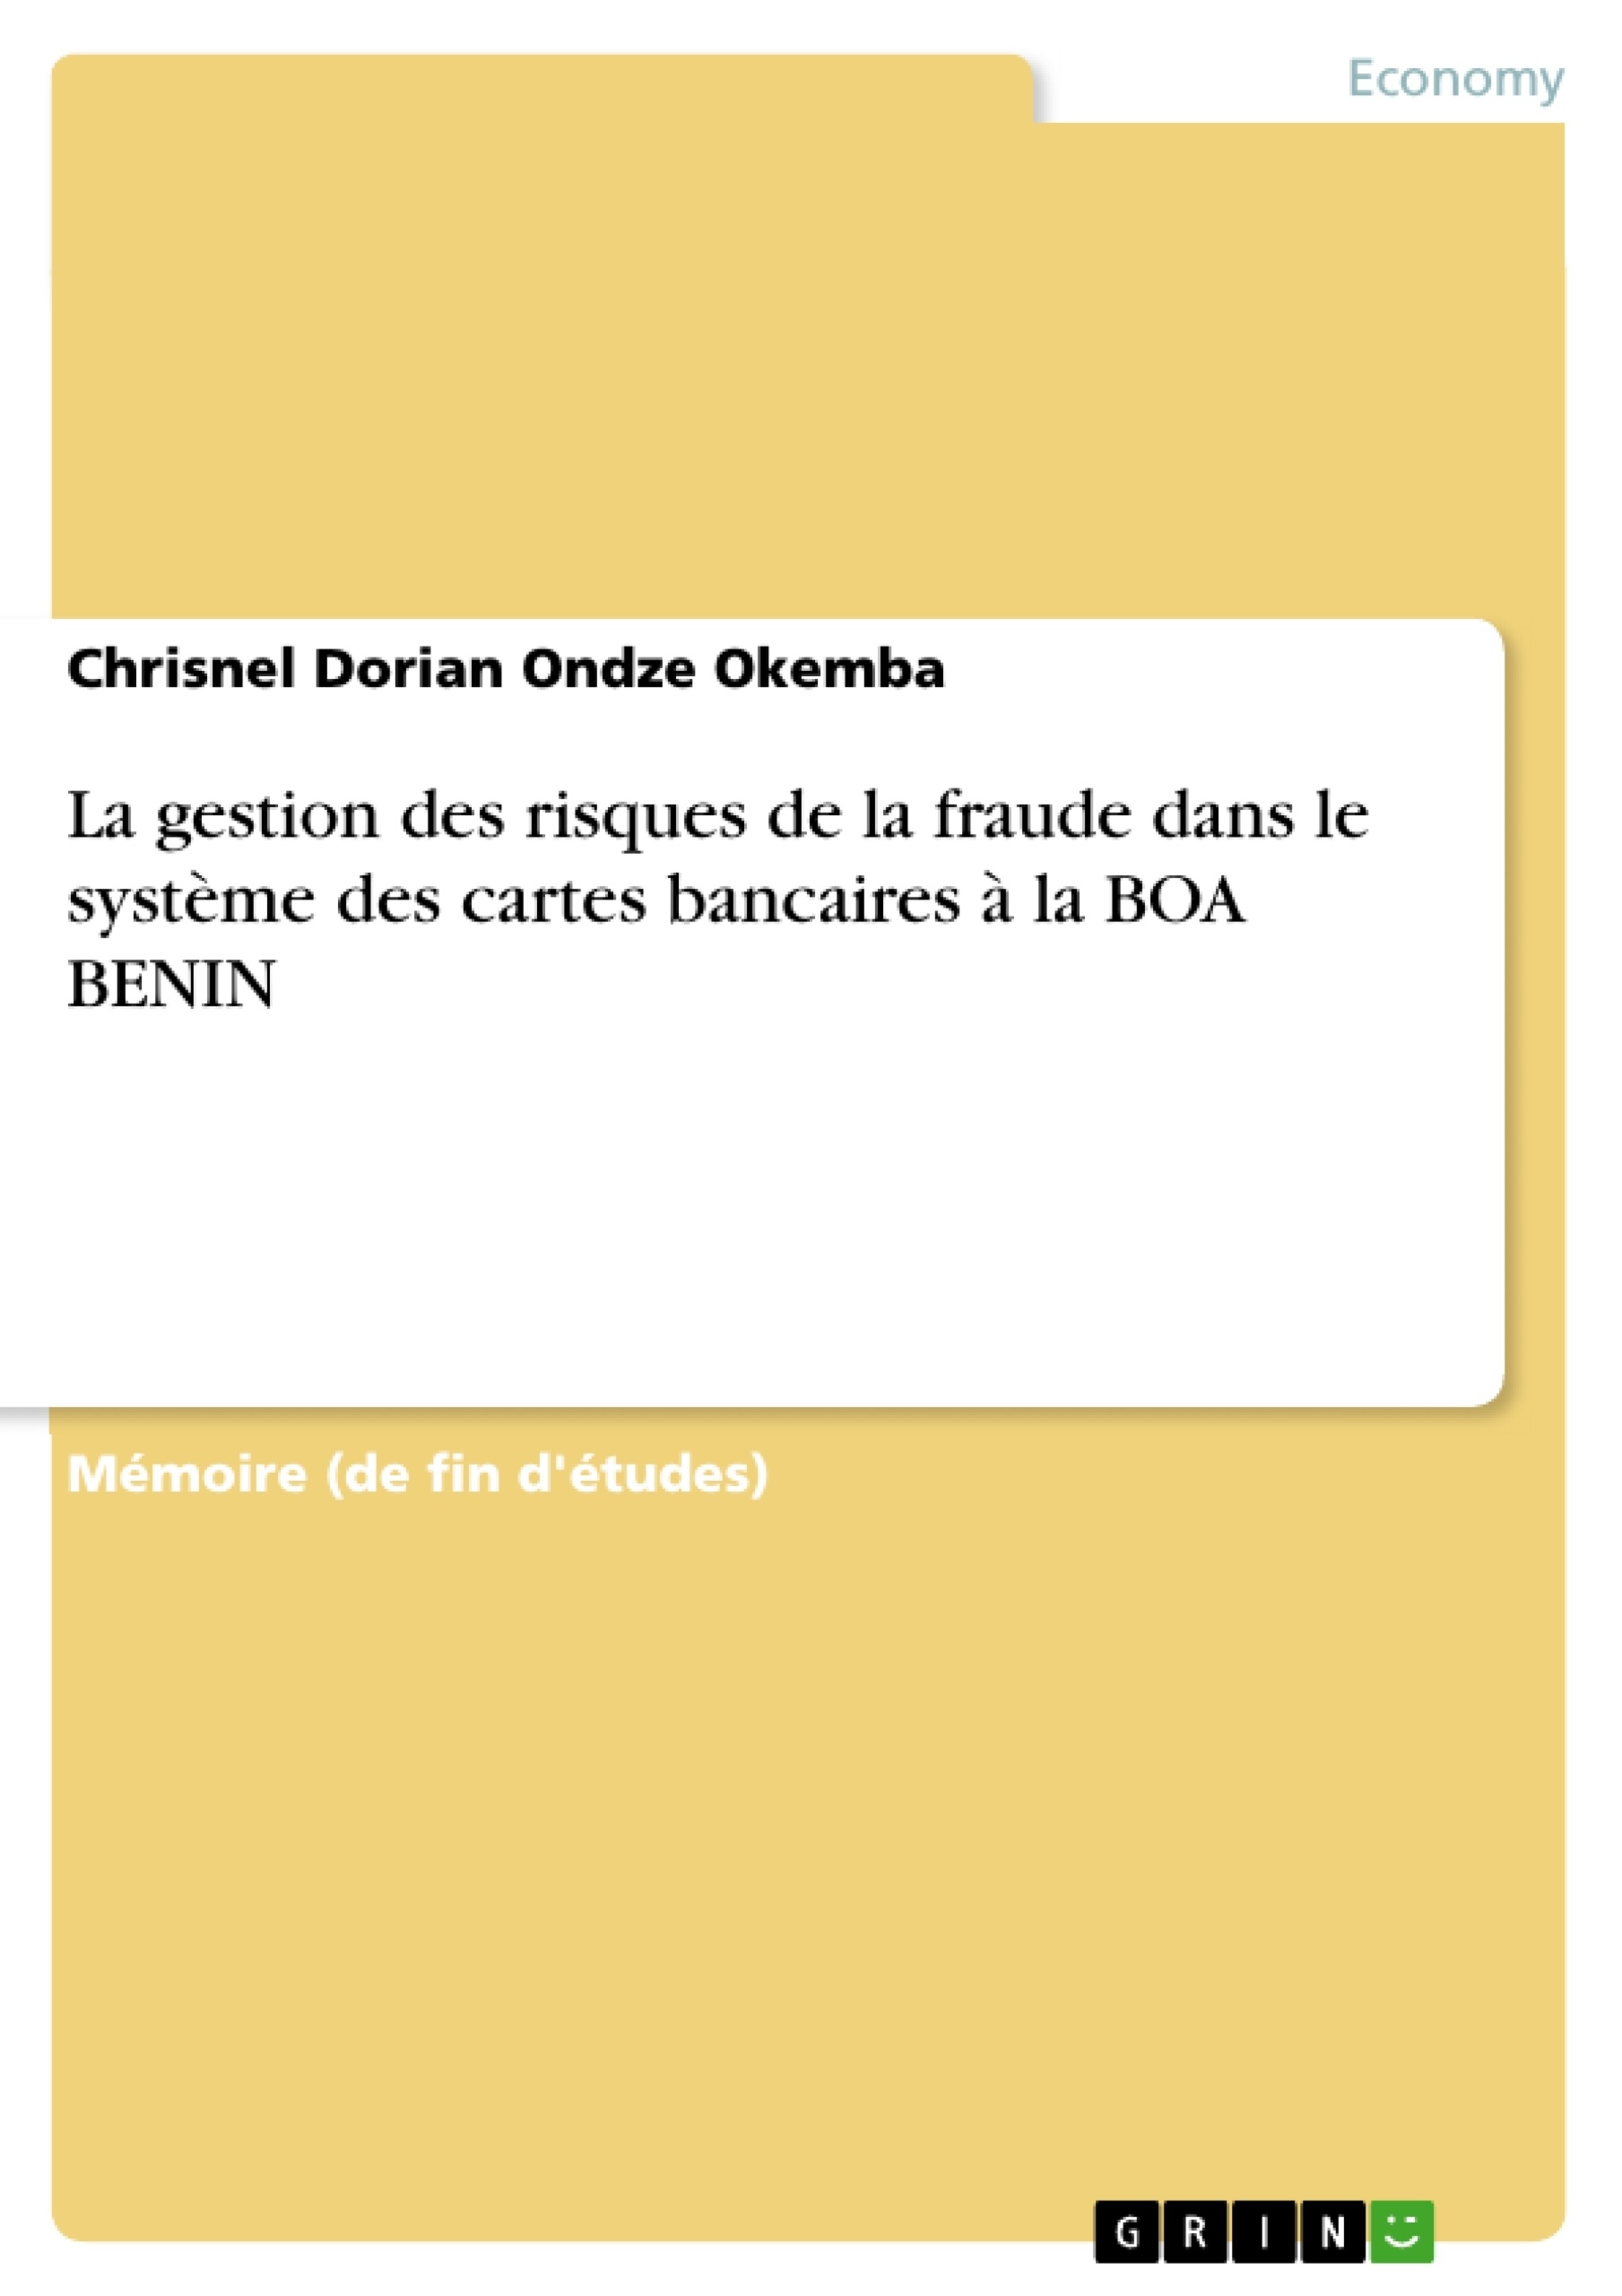 Title: La gestion des risques de la fraude dans le système des cartes bancaires à la BOA BENIN